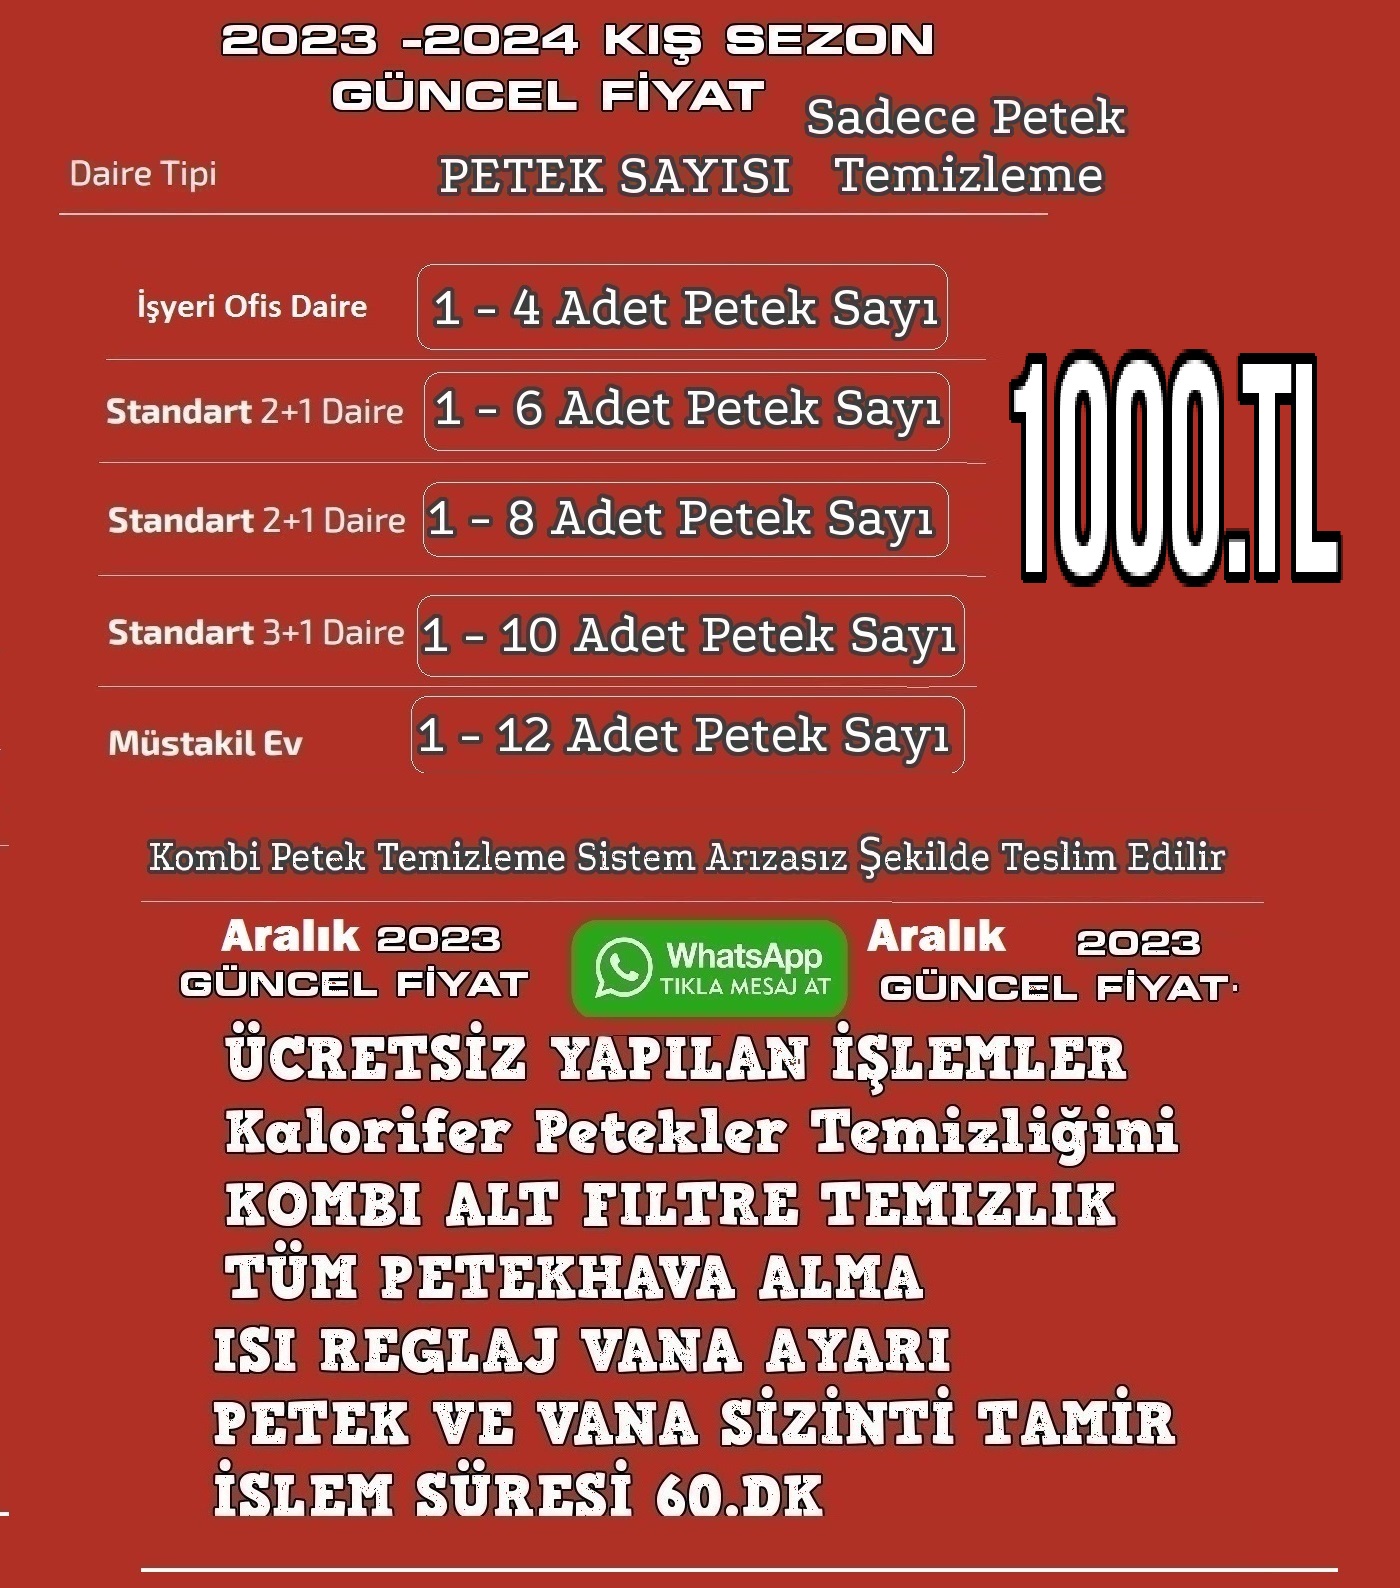 Beşiktaş Abbasağa Kombi Petek Temizleme | Beşiktaş Abbasağa Kombi Petek Temizleme | Kombi Petek Temizleme Beşiktaş Abbasağa.